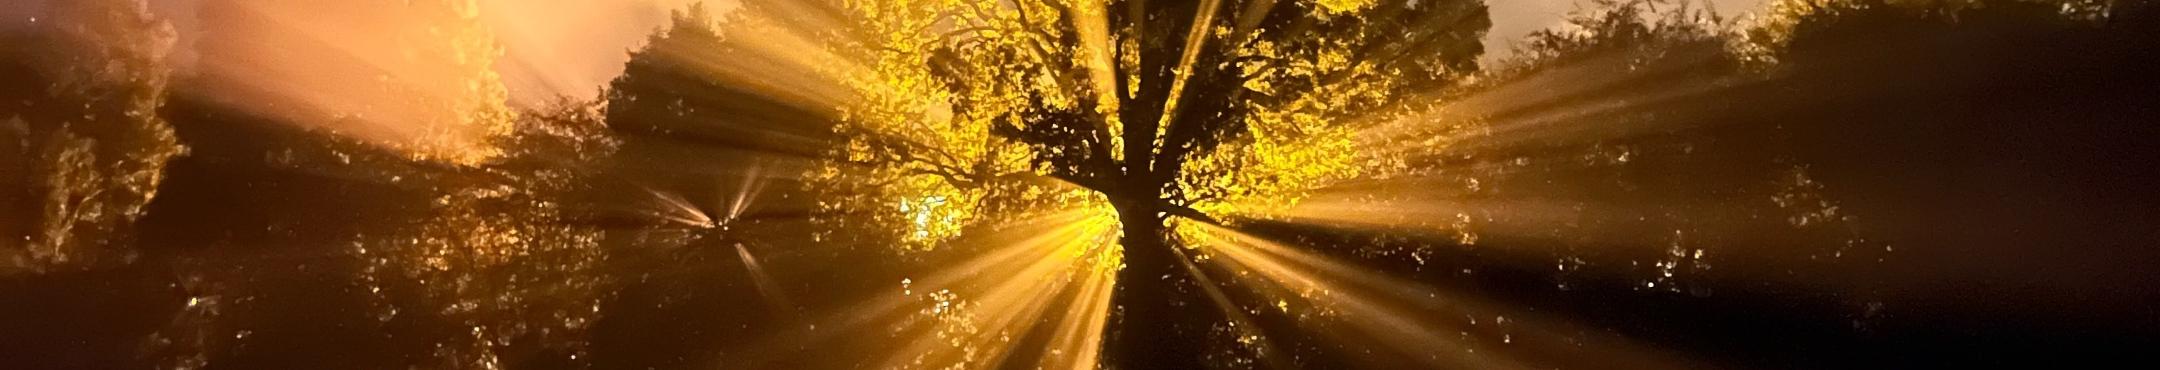 Hinter einem Baum geht die Sonne auf und streut breit ihre Strahlen durch die Blätter